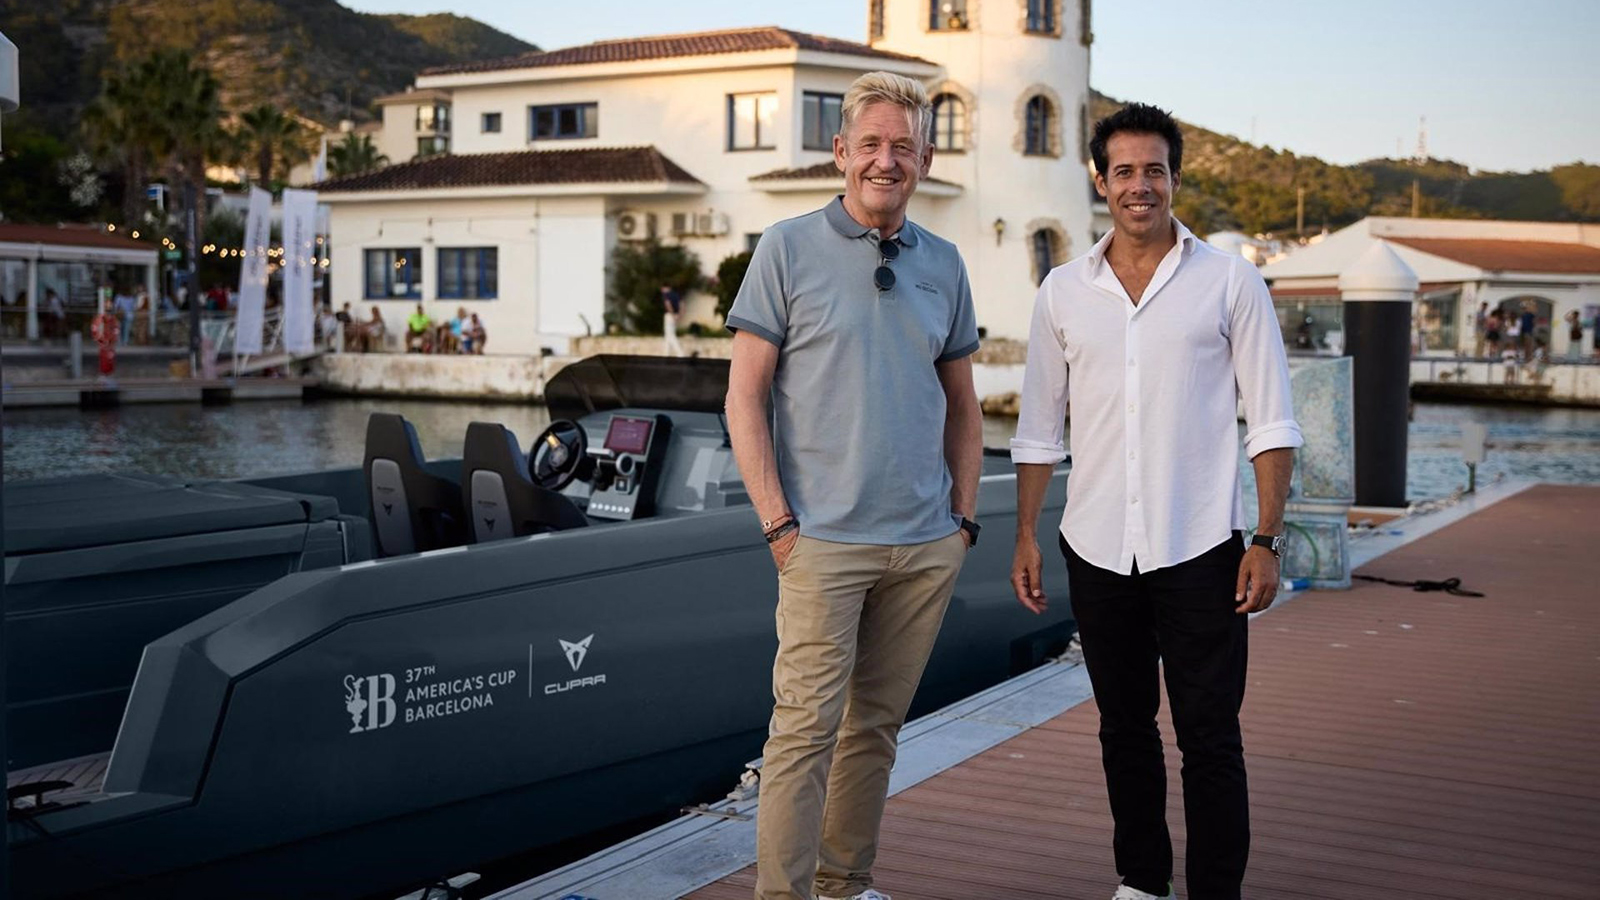 El CEO de Cupra, Wayne Griffiths, y el cofundador de De Antonio Yacht Marc de Antonio, junto al E23 Terramar.